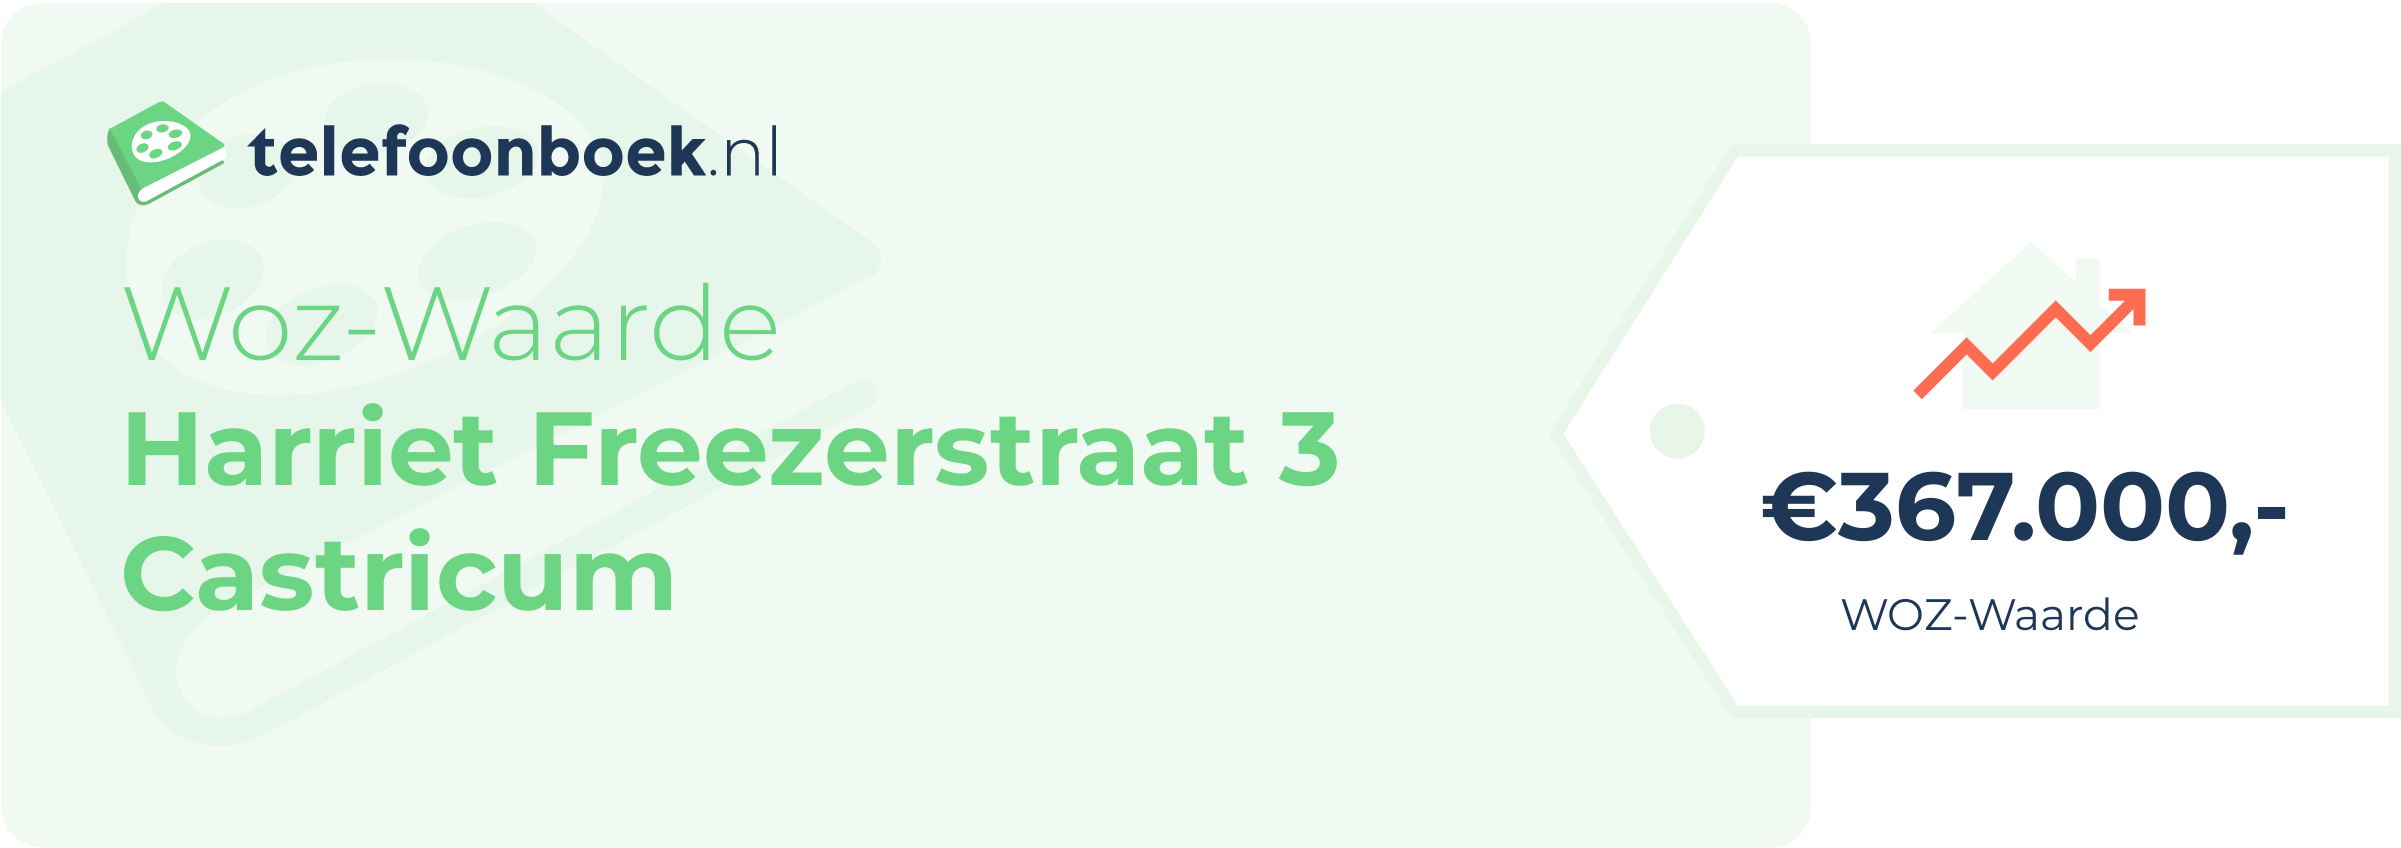 WOZ-waarde Harriet Freezerstraat 3 Castricum